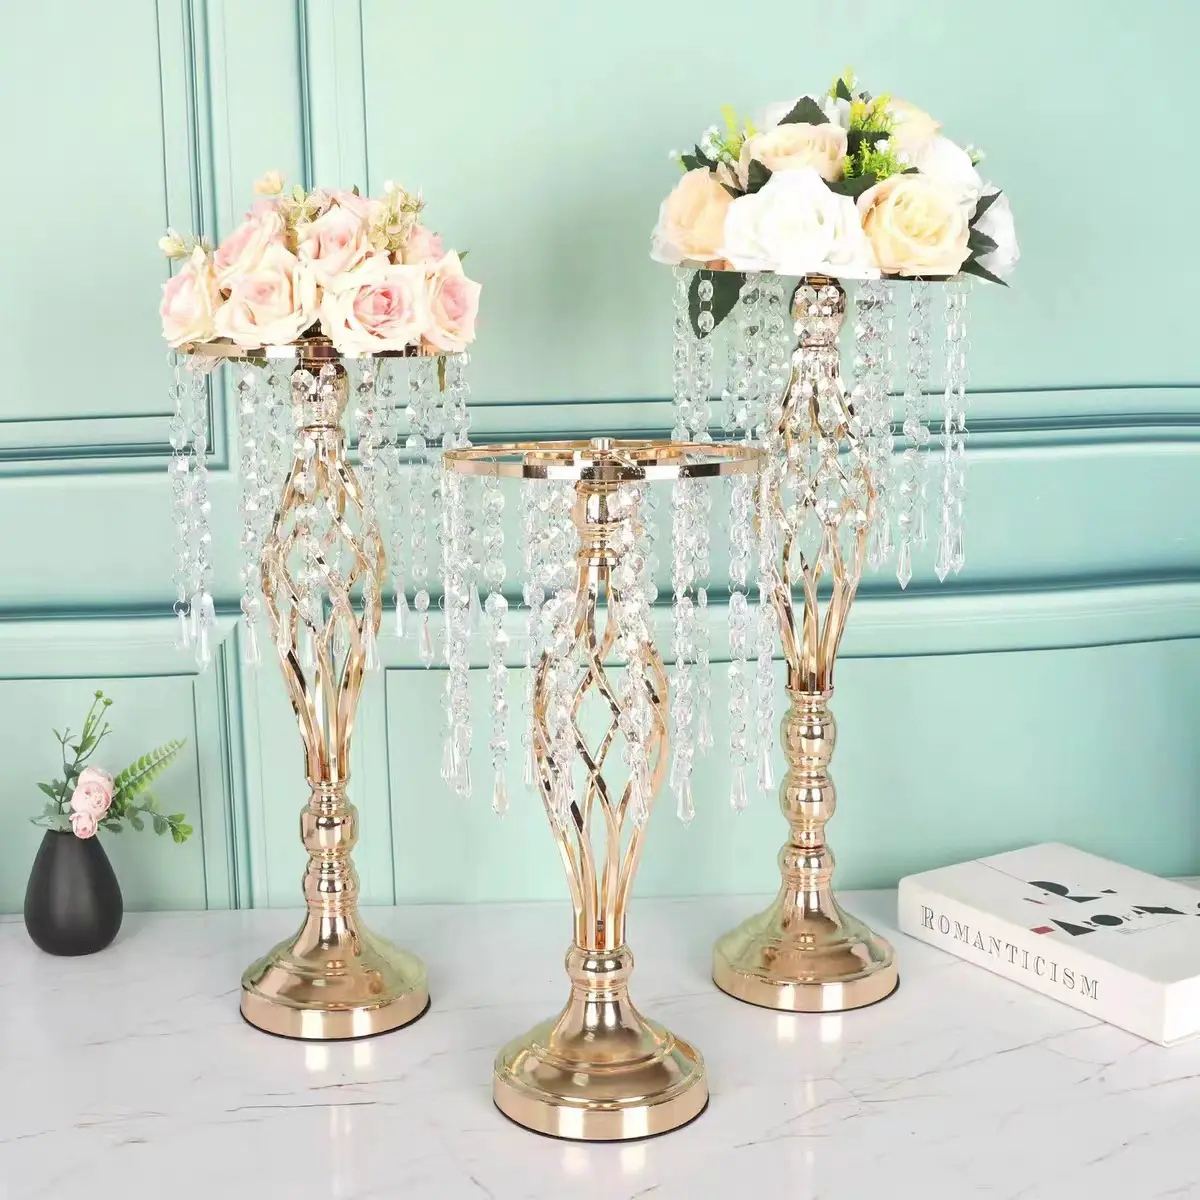 सुंदर रचनात्मक शादी सेंटरपीस टेबल सजावट धातु सोने के चांदी के फूल चंडेलर क्रिस्टल के साथ खड़े हैं।